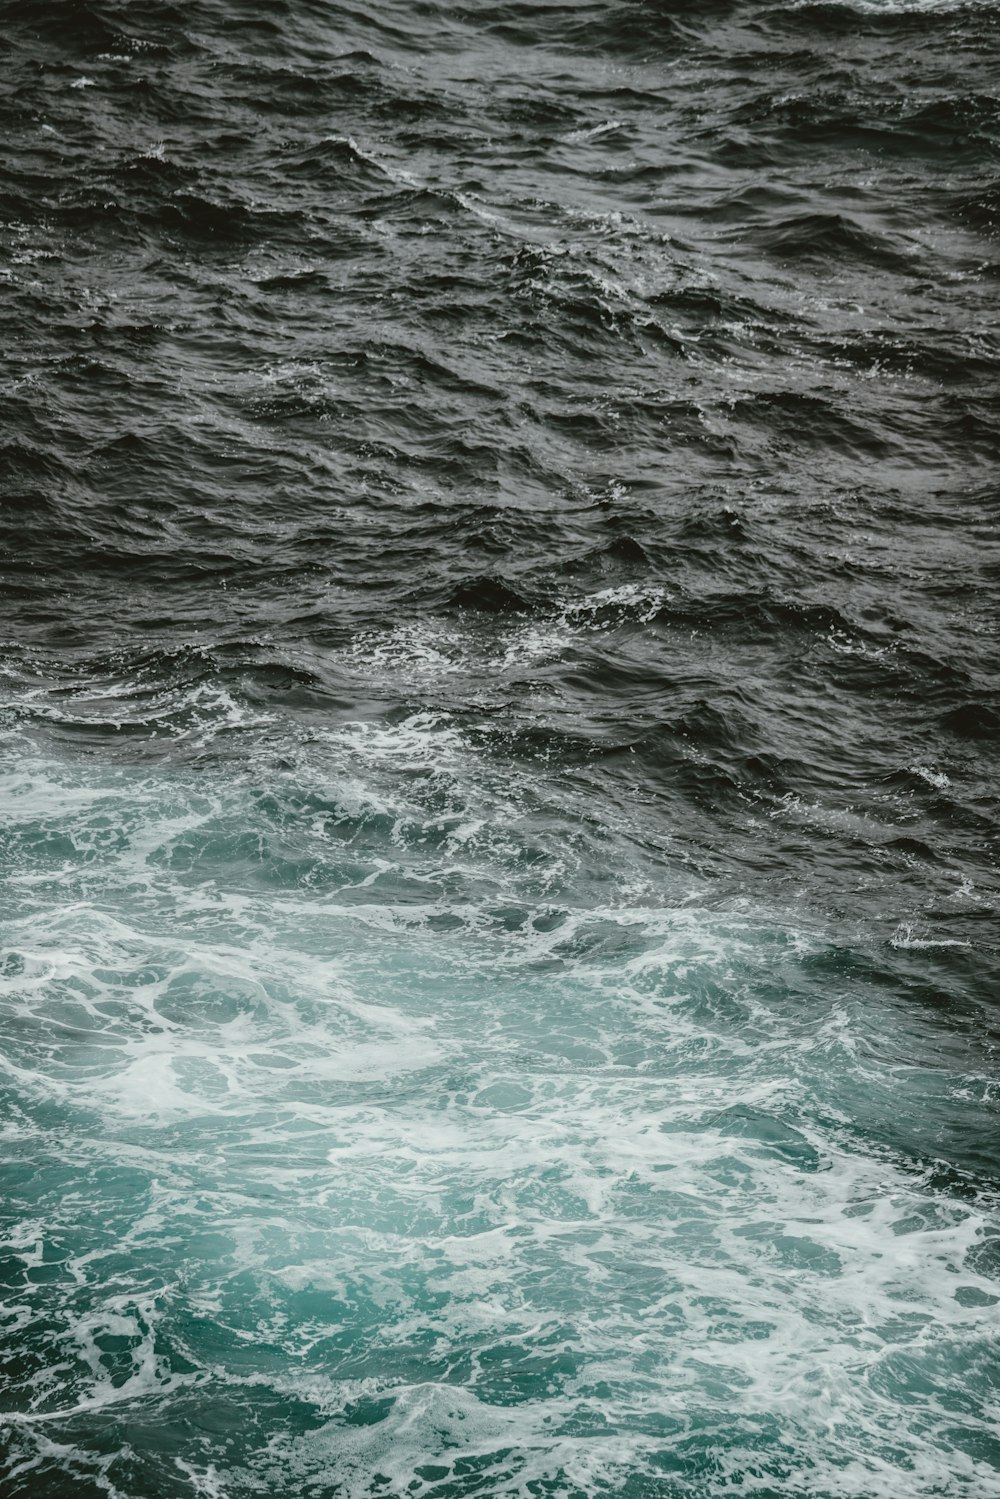 Fotografia selettiva a colori delle onde dell'oceano